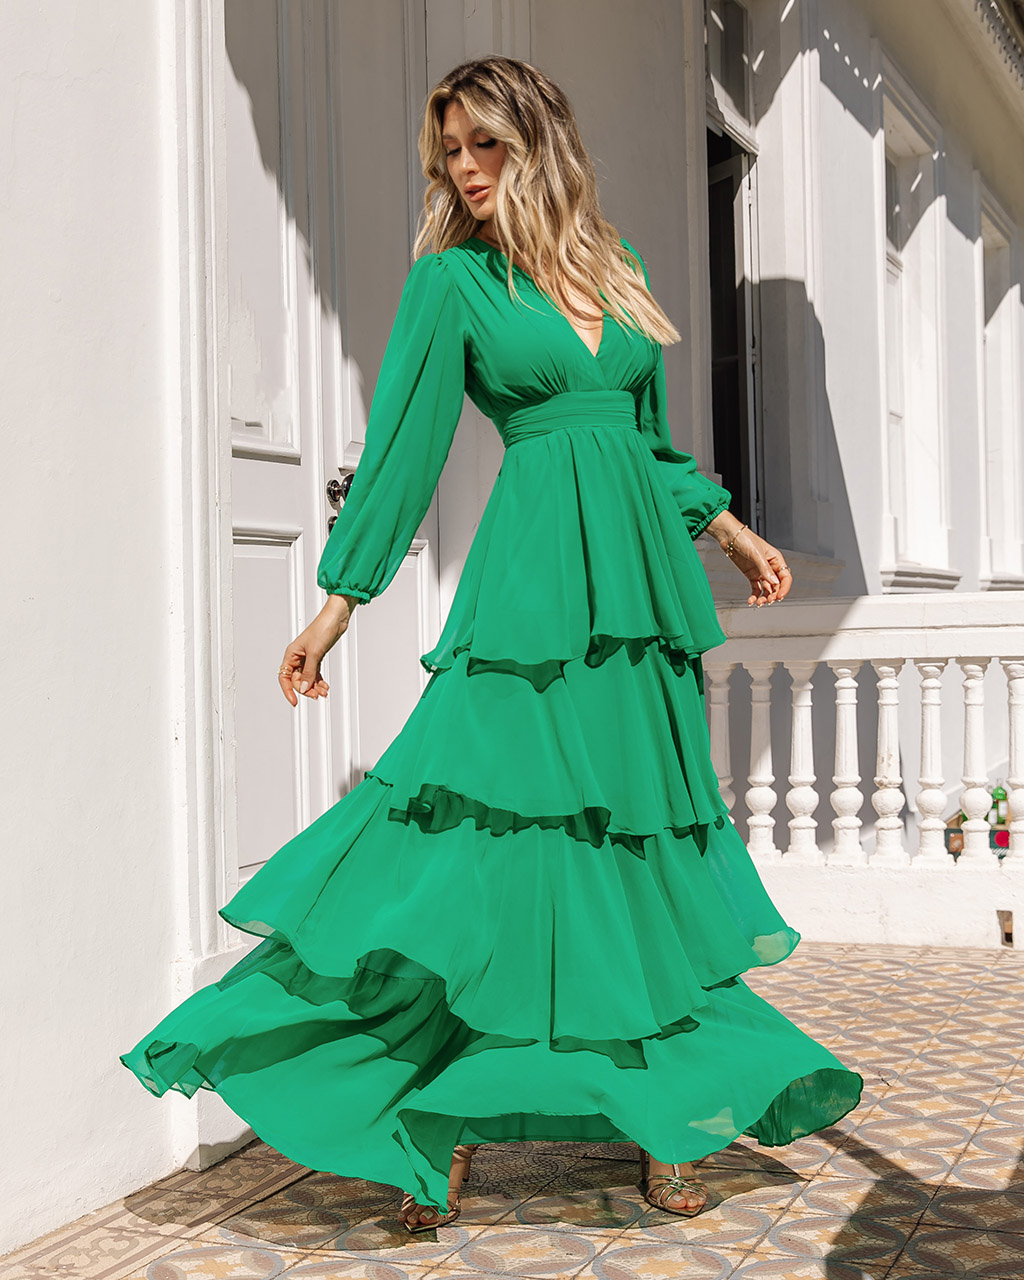 Vestido Longo Verde Fatima - Empório NM